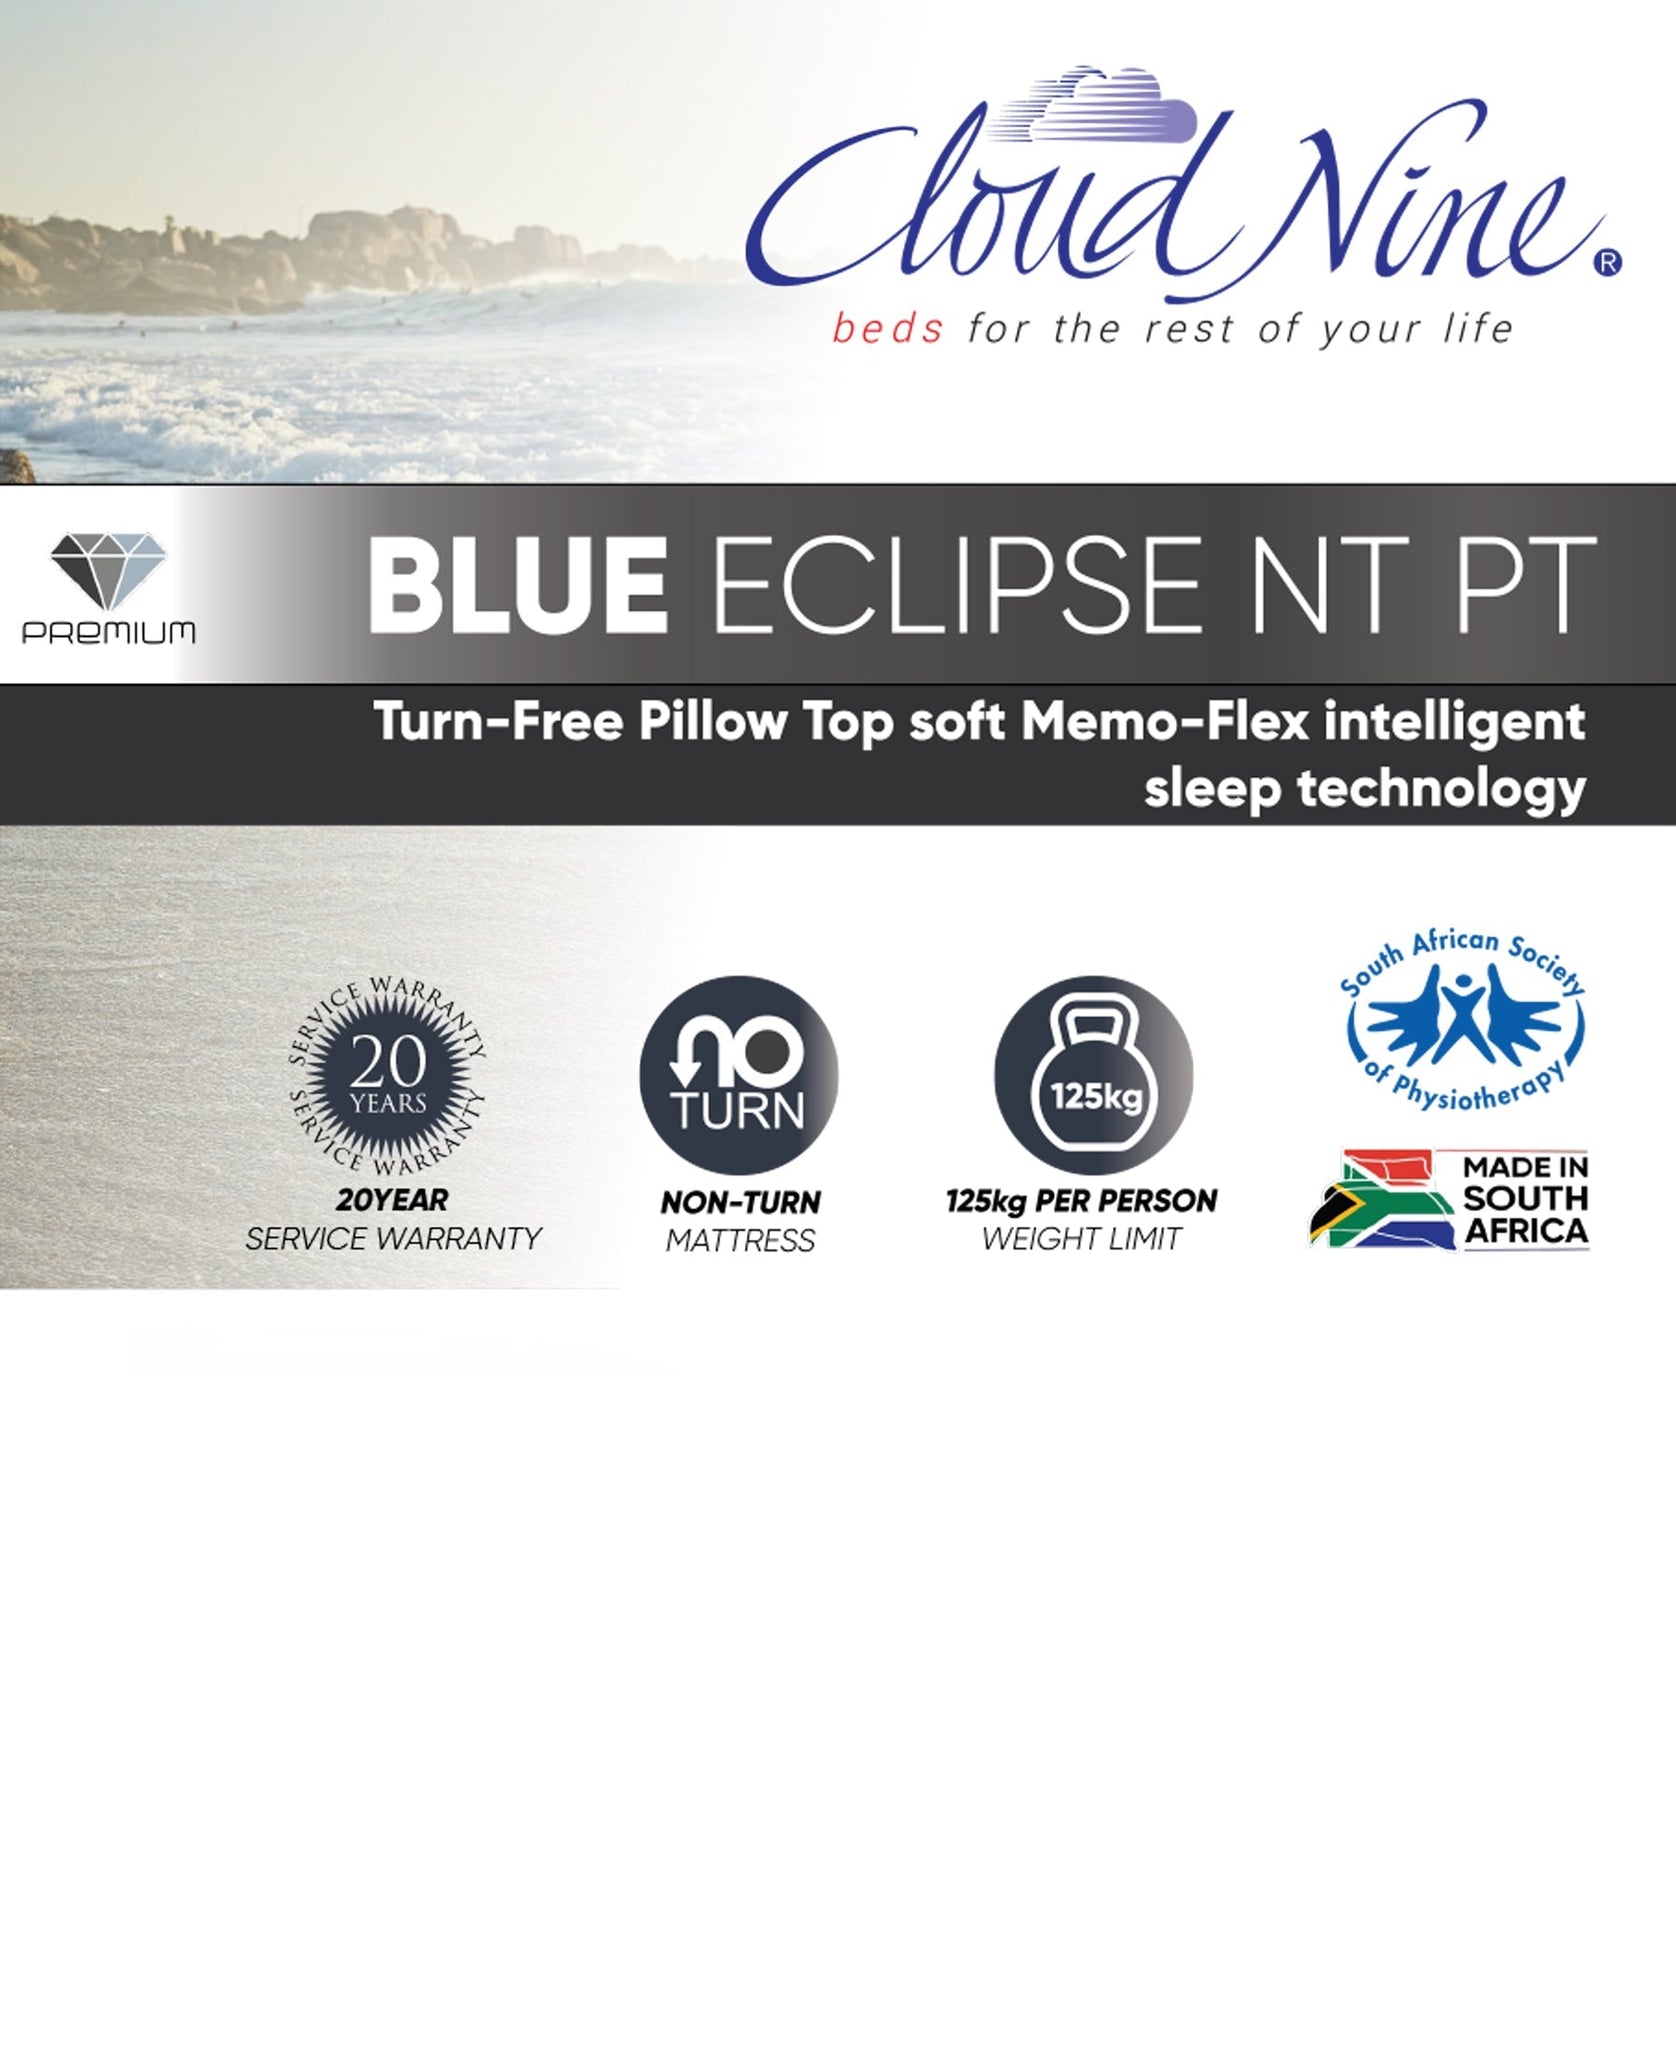 Cloud Nine Blue Eclipse NT PT Bed Double